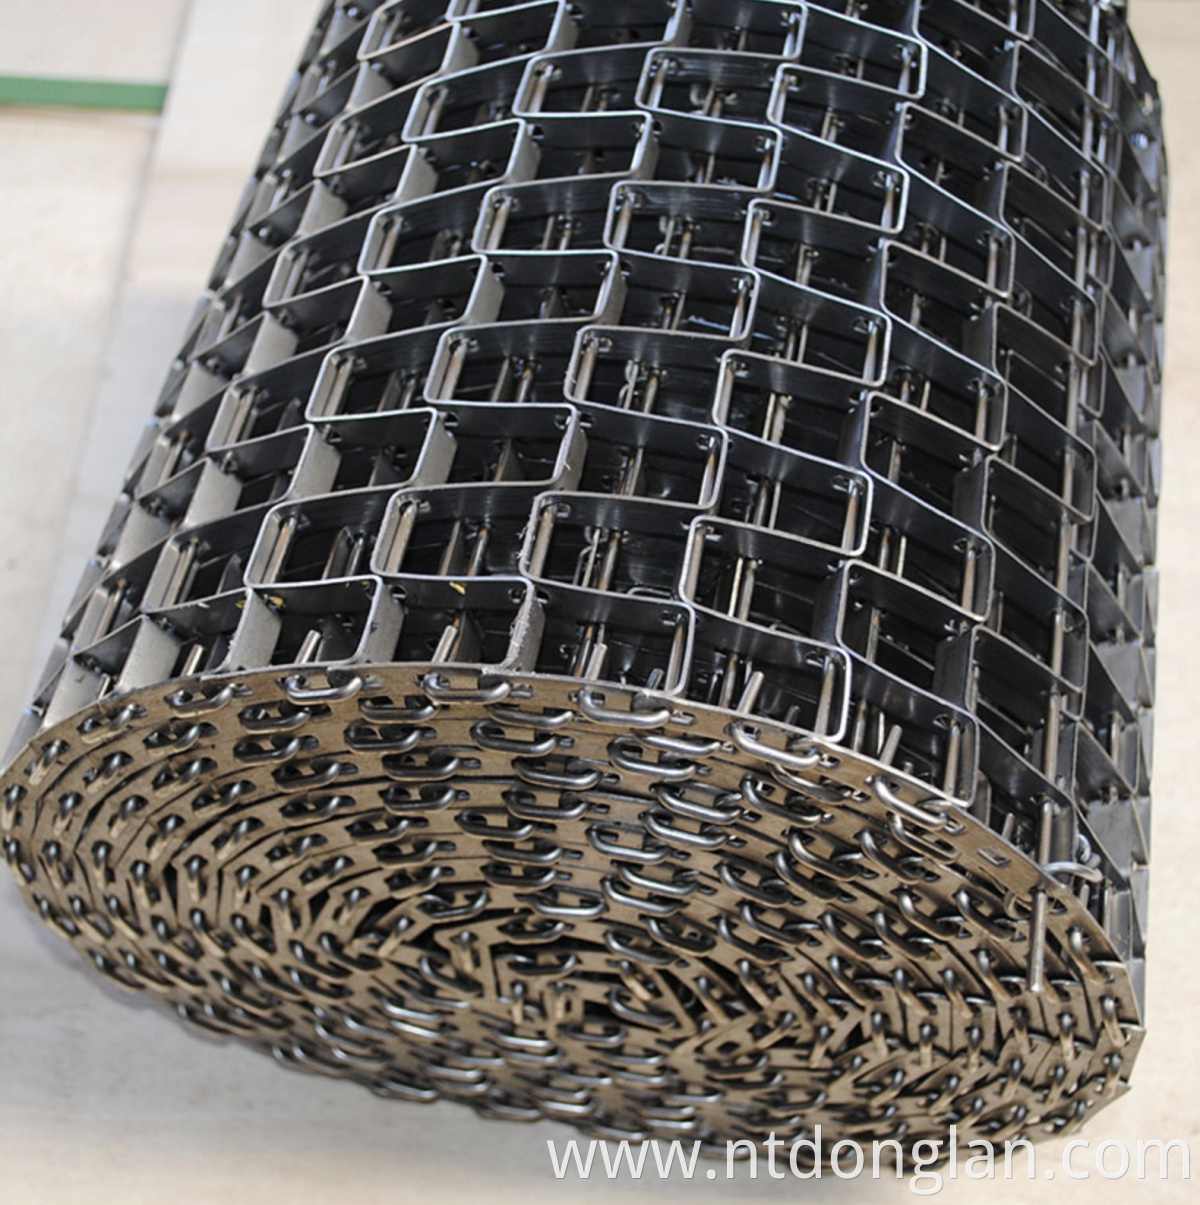 Metal Great Wall Mesh Belts Stainless Steel Horseshoe Belt Wire Net For MachinesSs Great Wall Conveyor Net Belt